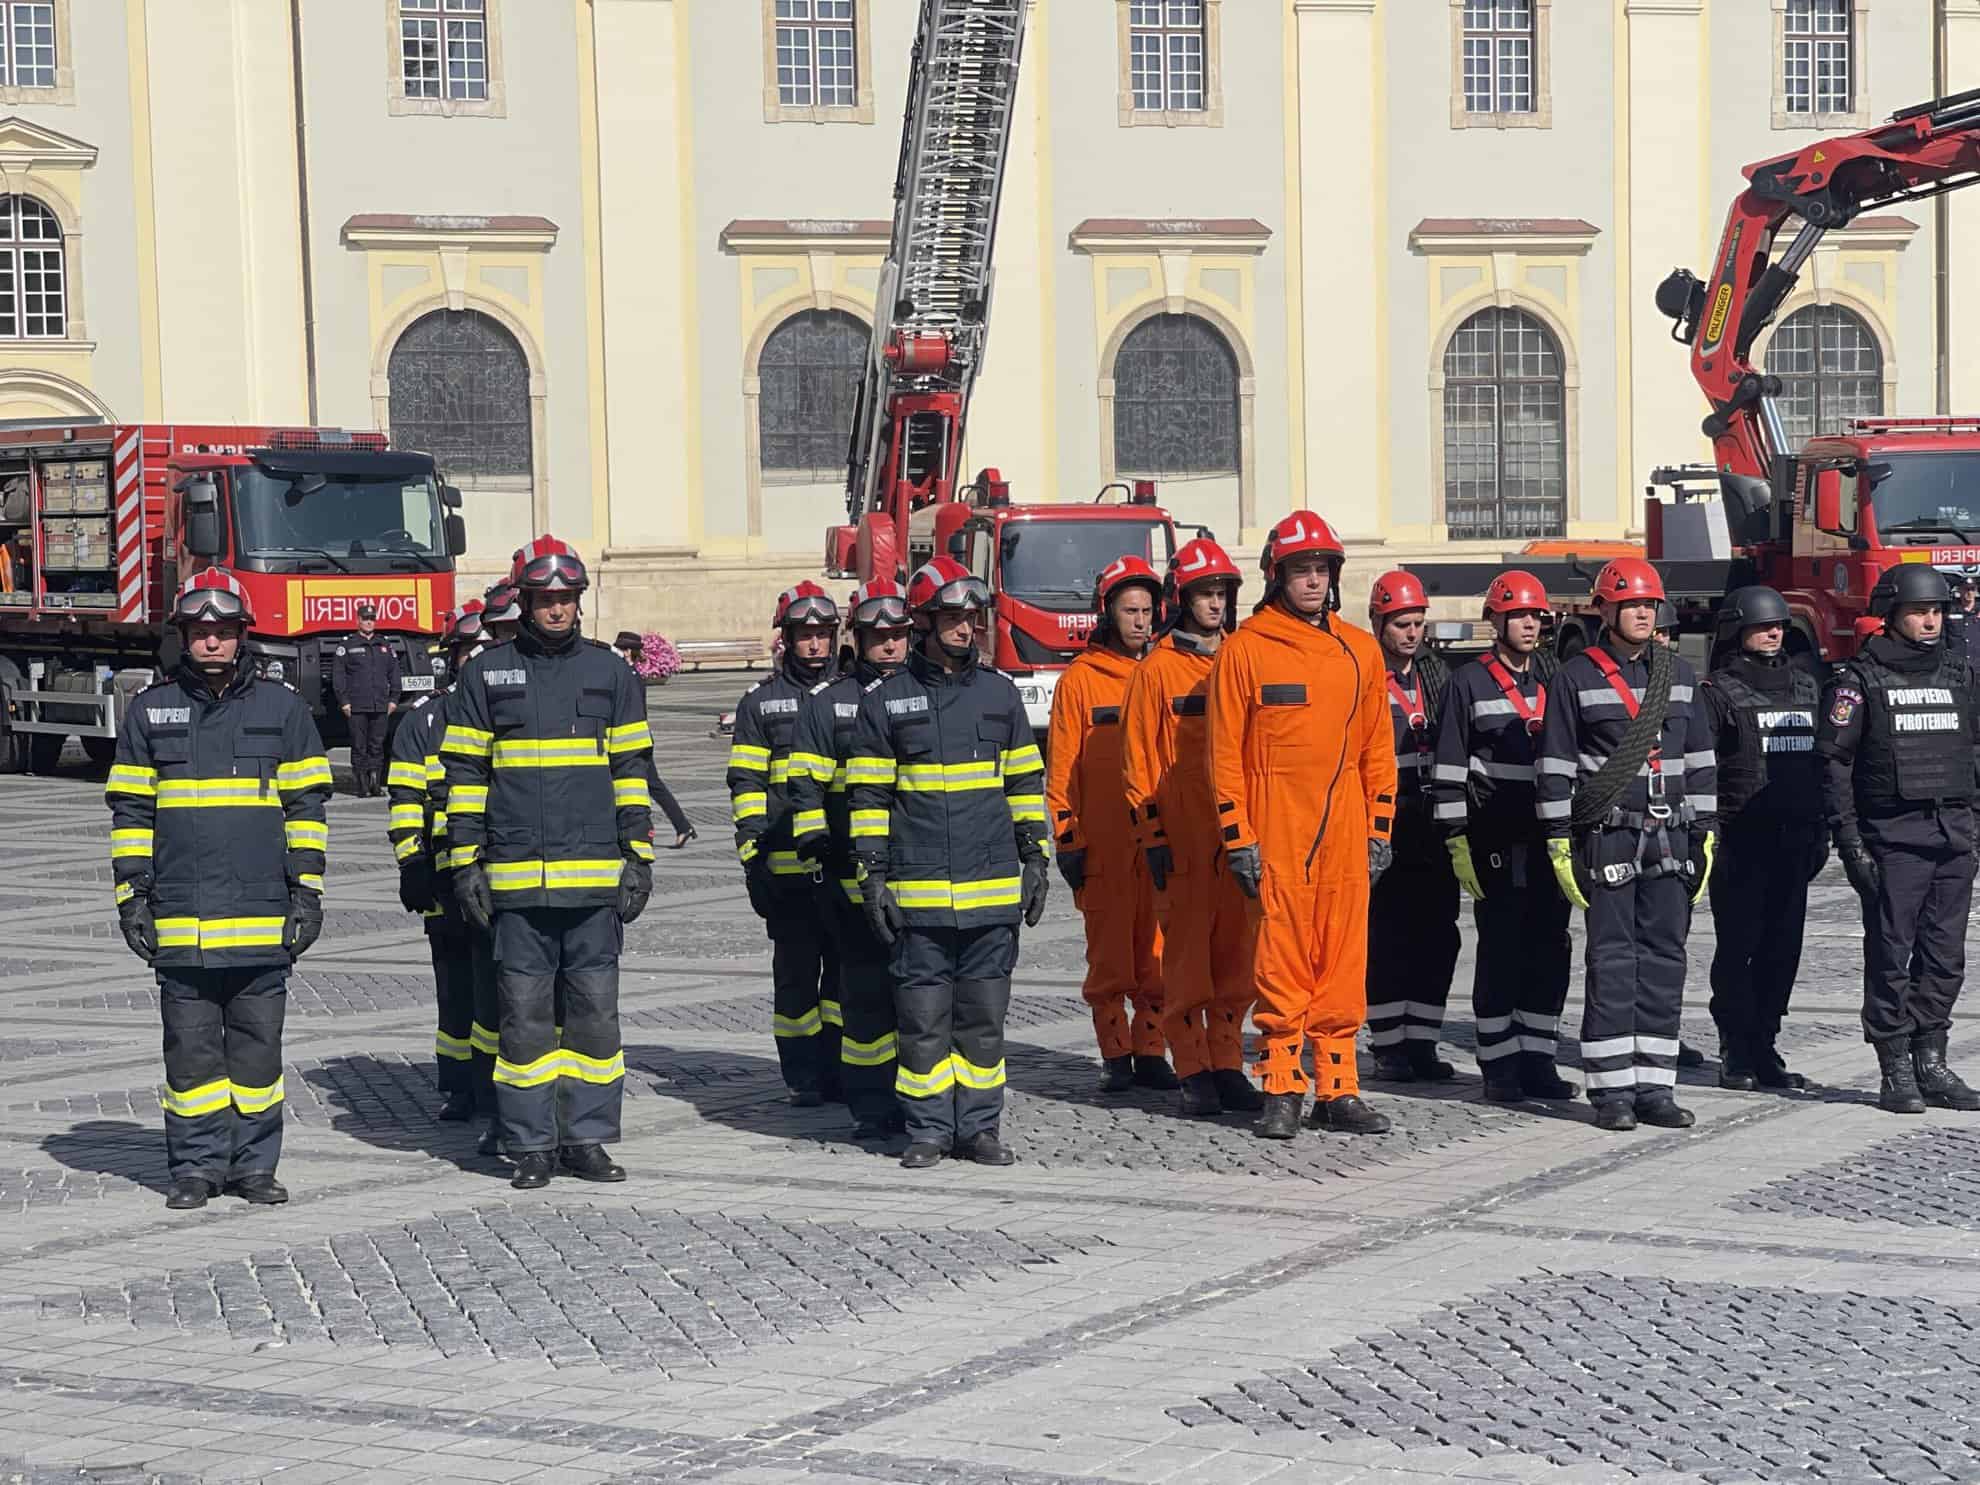 pompierul anului la sibiu, premiat în cadru festiv în piața mare. intervențiile sale eroice au salvat vieți (video)